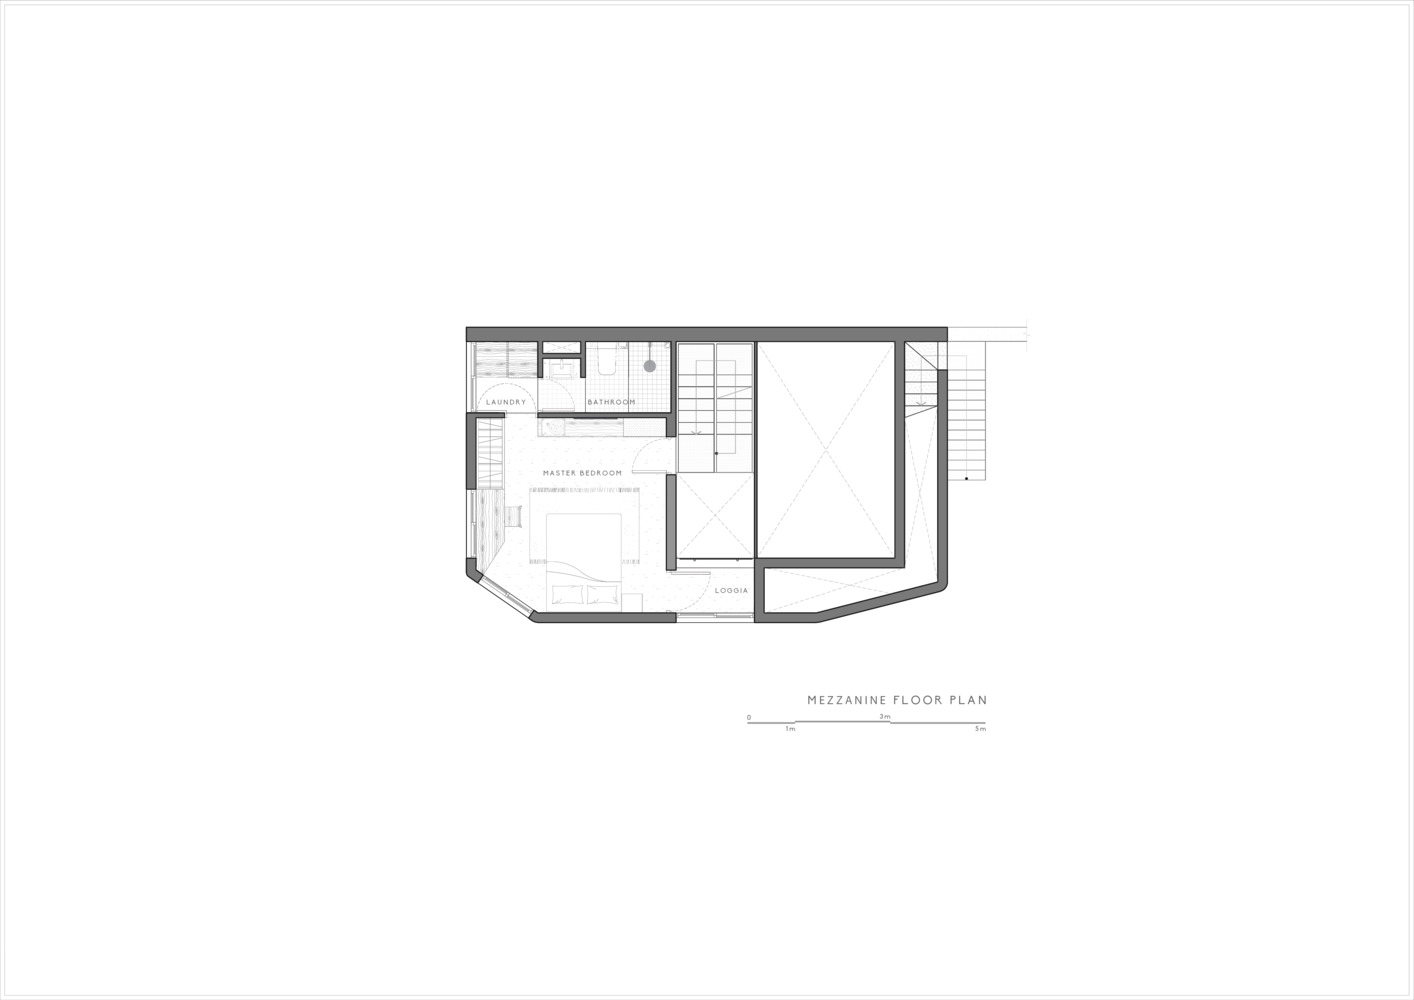 CHI's House: Kiến trúc phản ánh những yếu tố đối lập, tạo nên sự bí ẩn cho ngôi nhà giữa lòng Đà Lạt - Ảnh 21